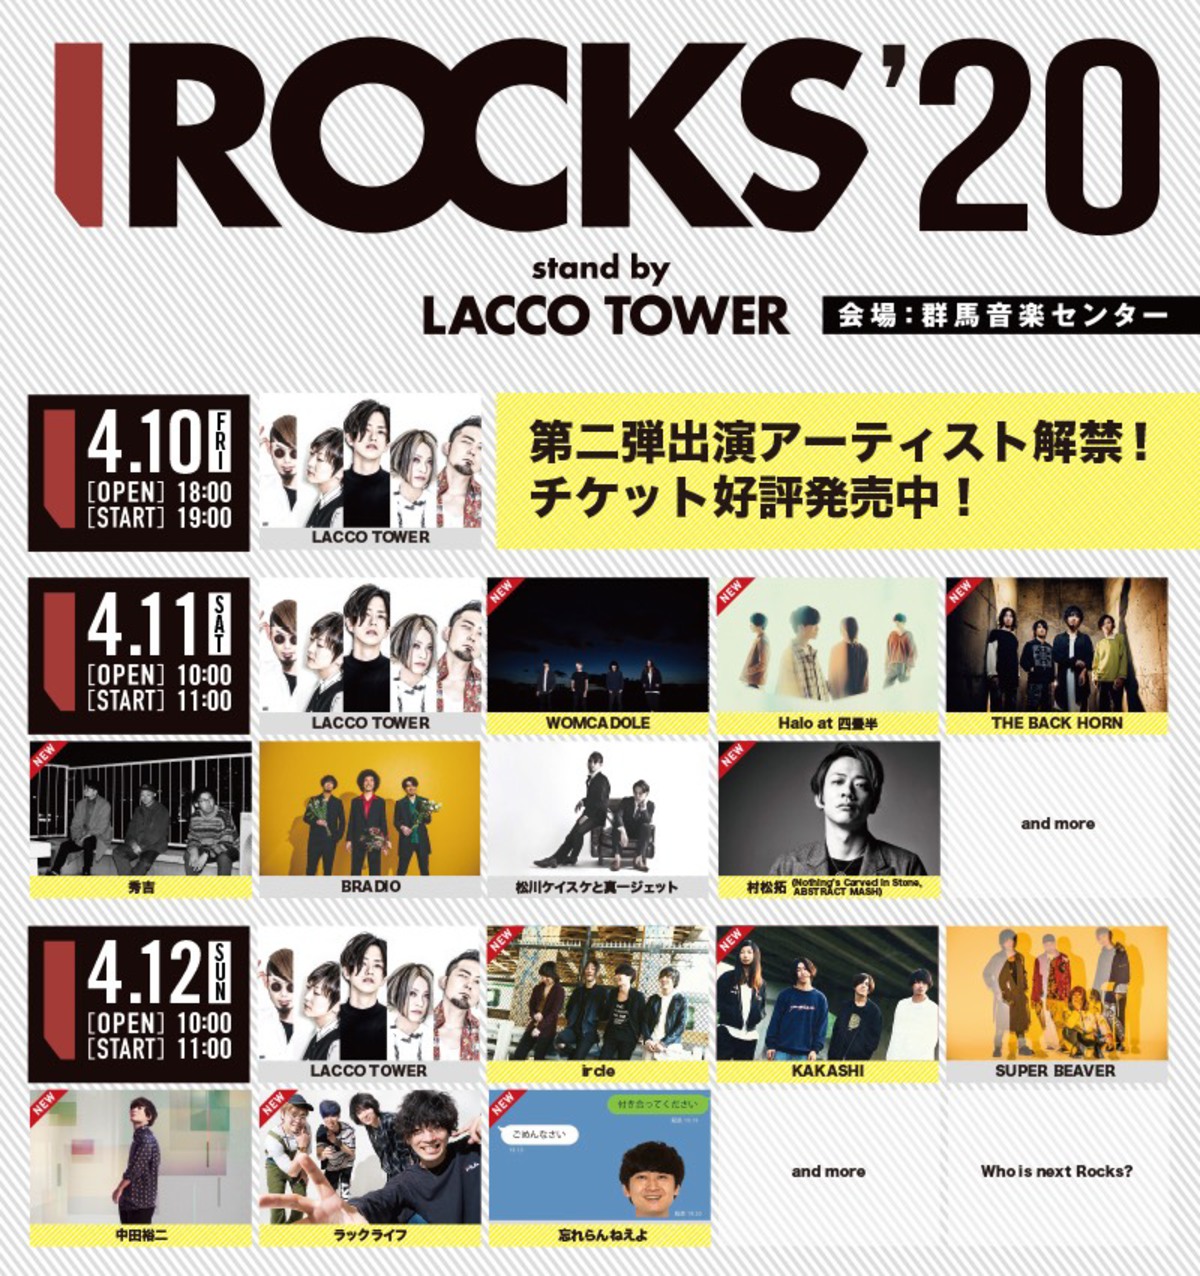 IROCKS 23 ガチャ LACCO TOWER - ノベルティグッズ